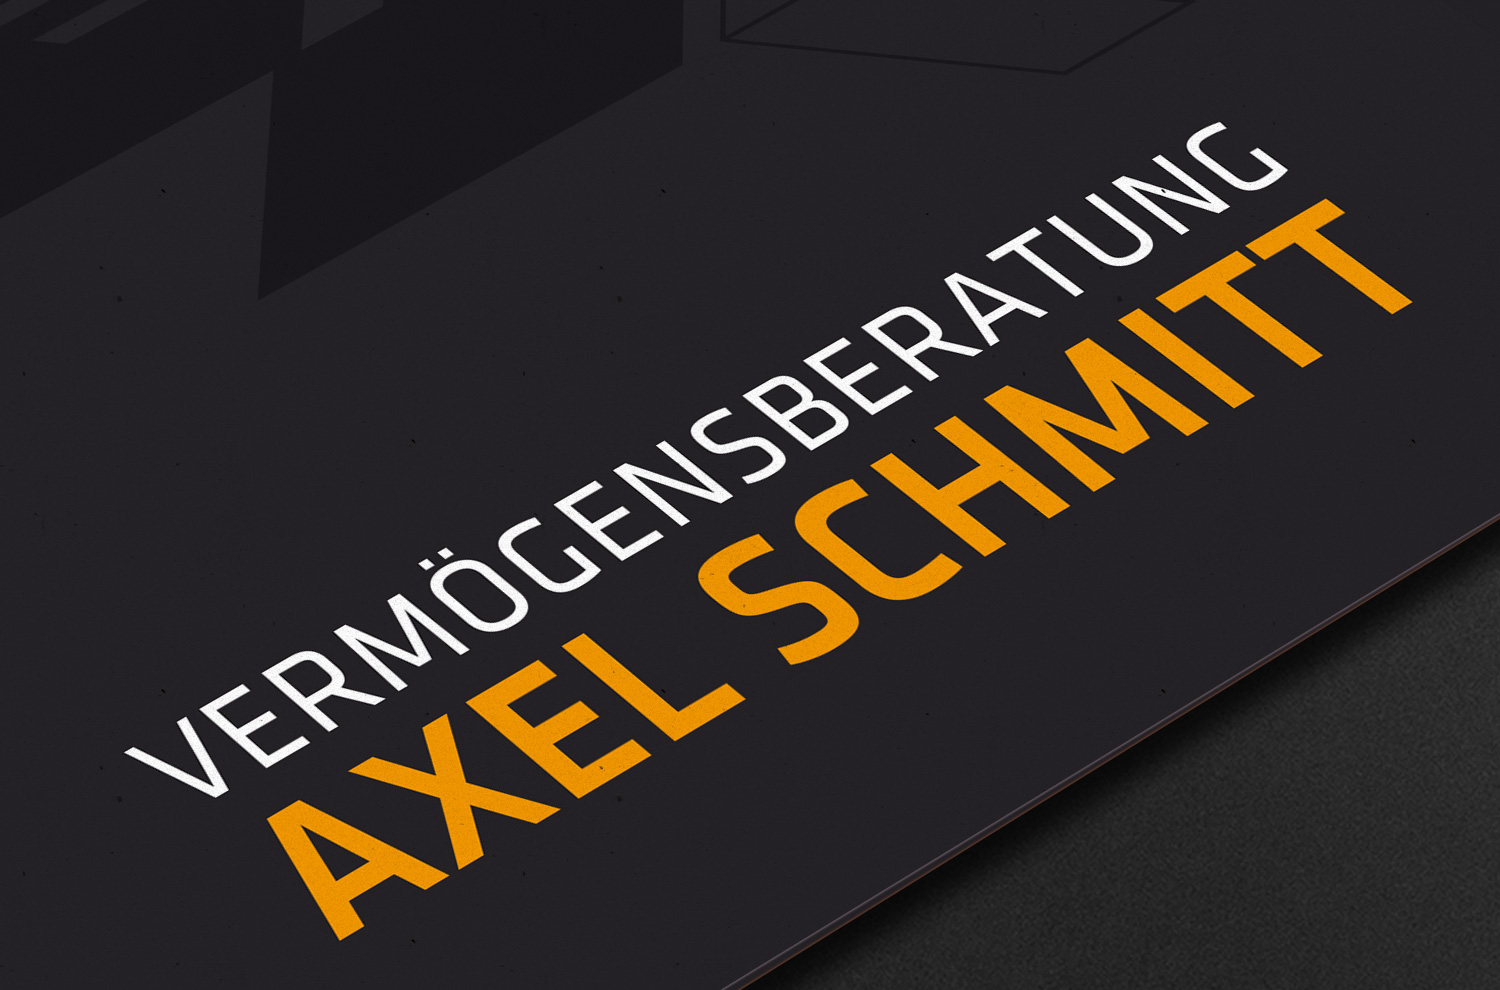 Axel Schmitt